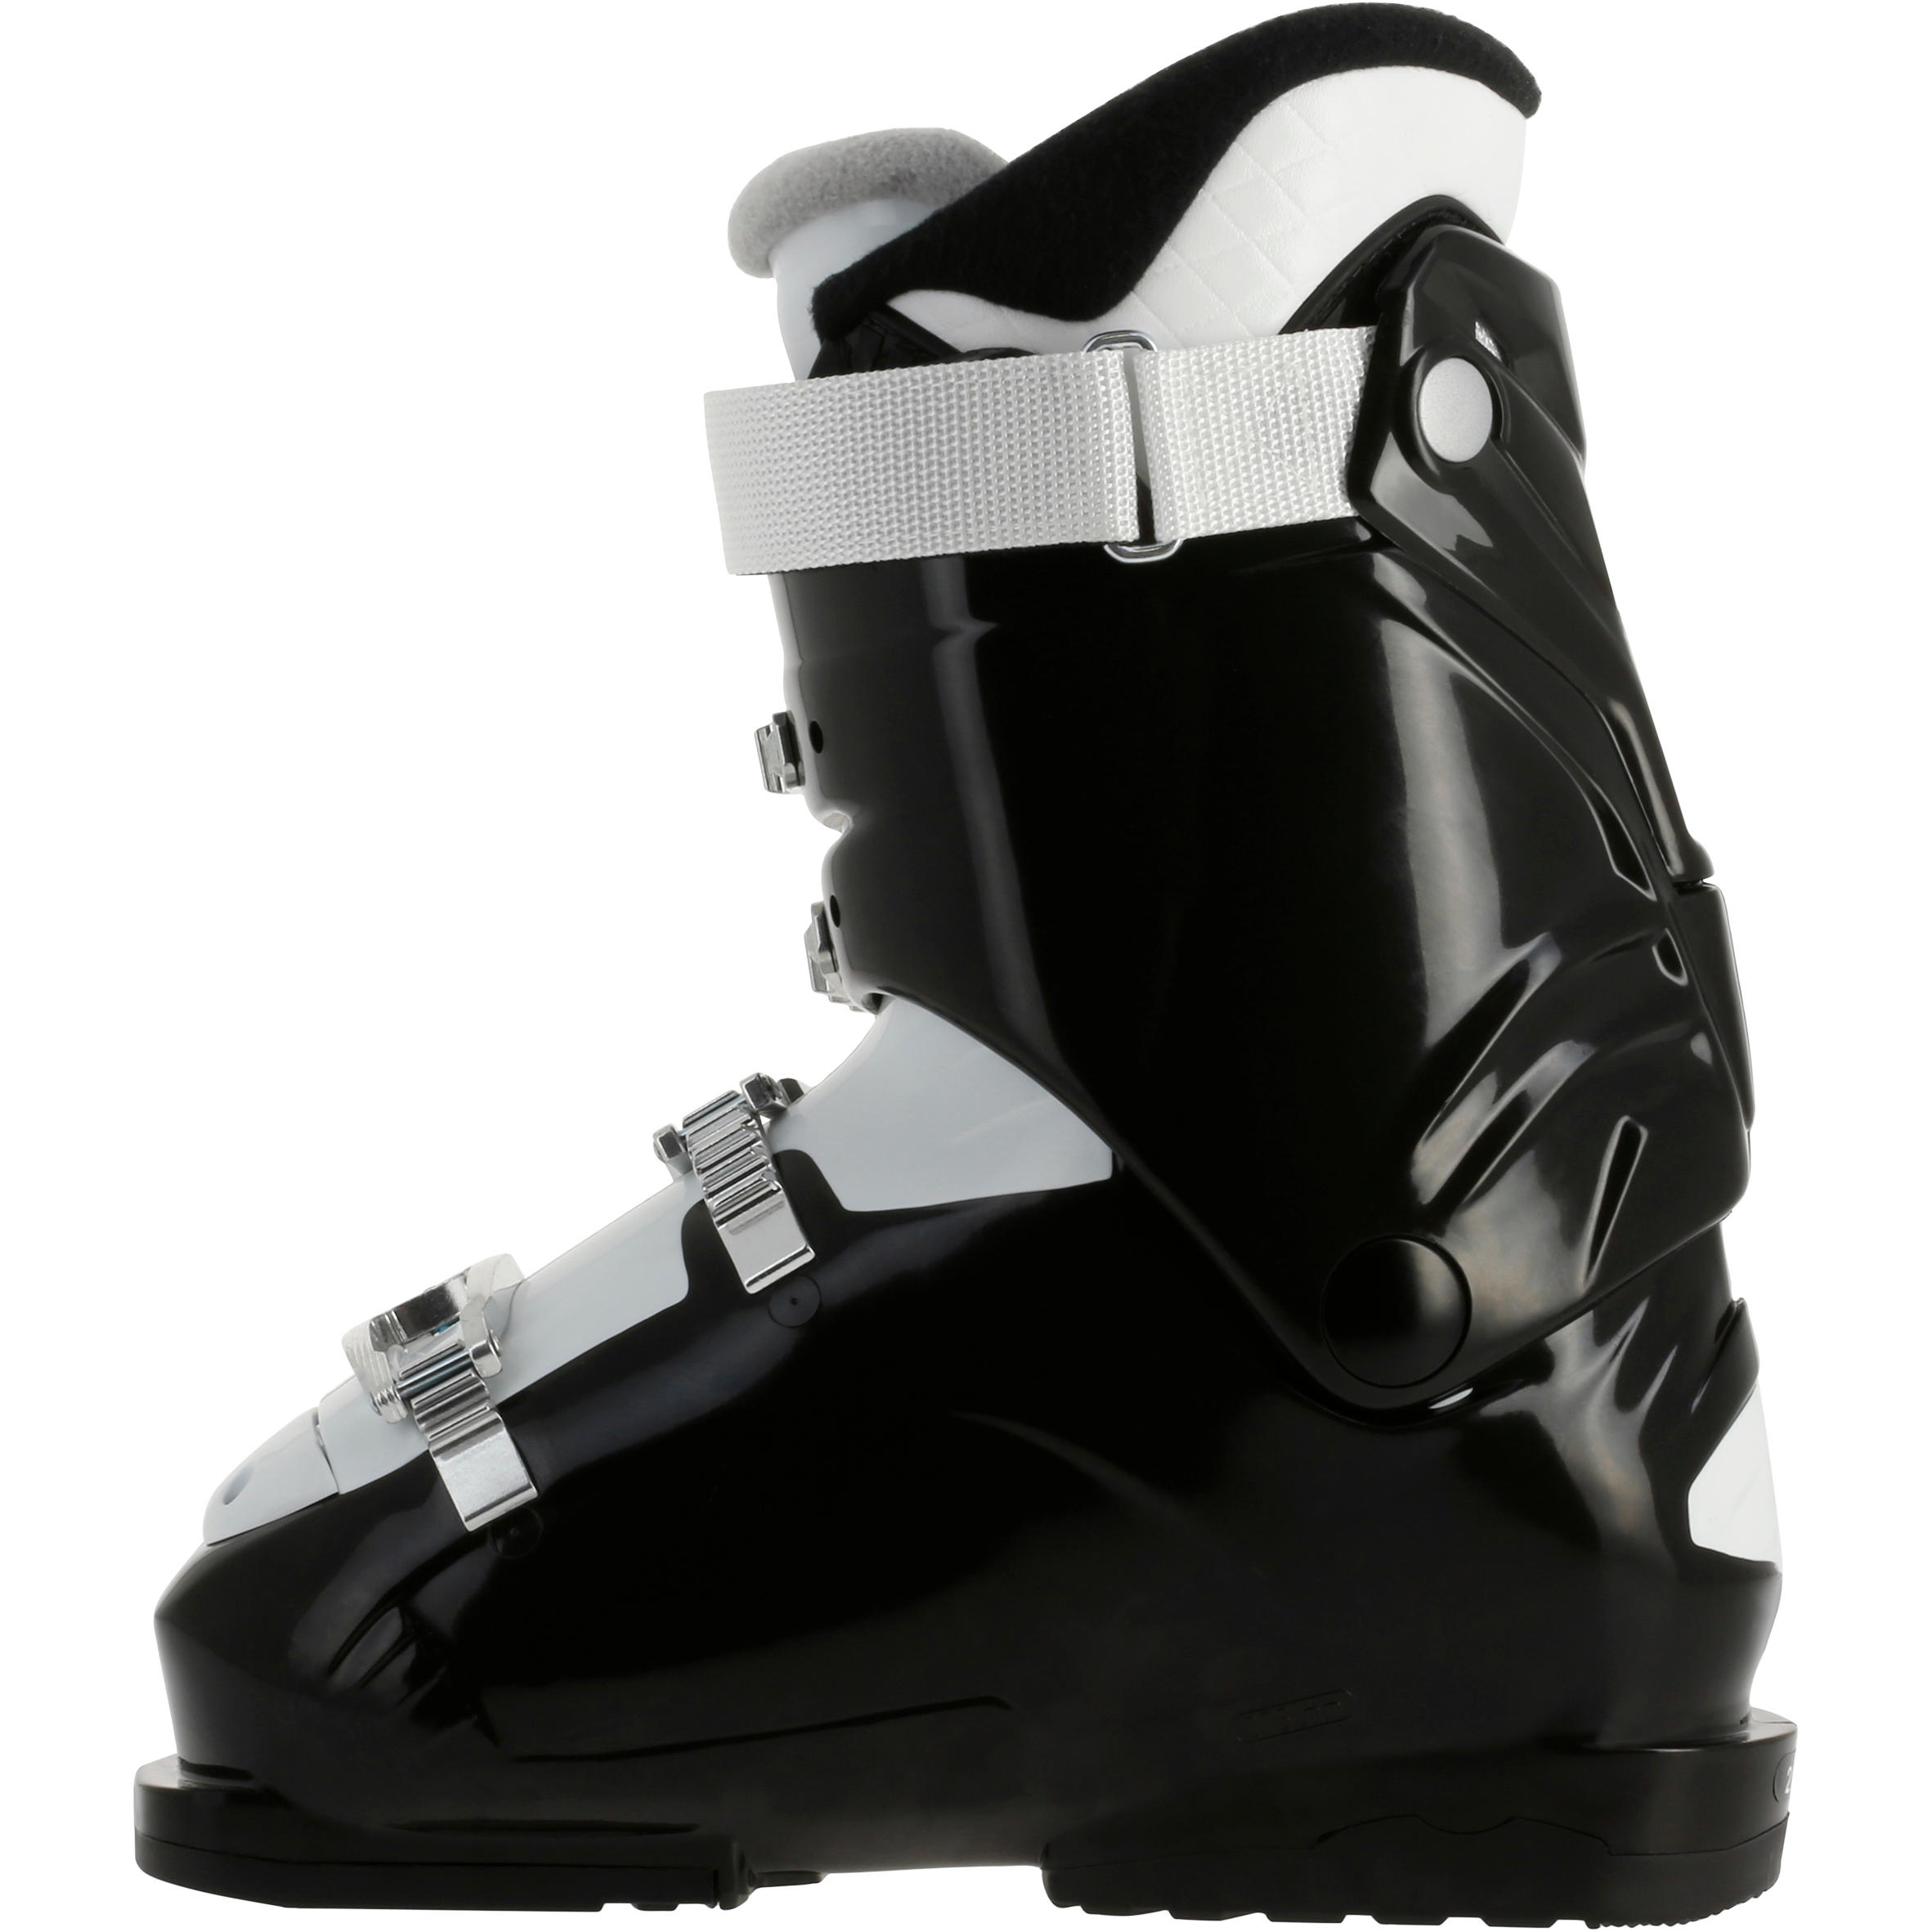 WID 50 Women's Ski Boots - Black 6/11